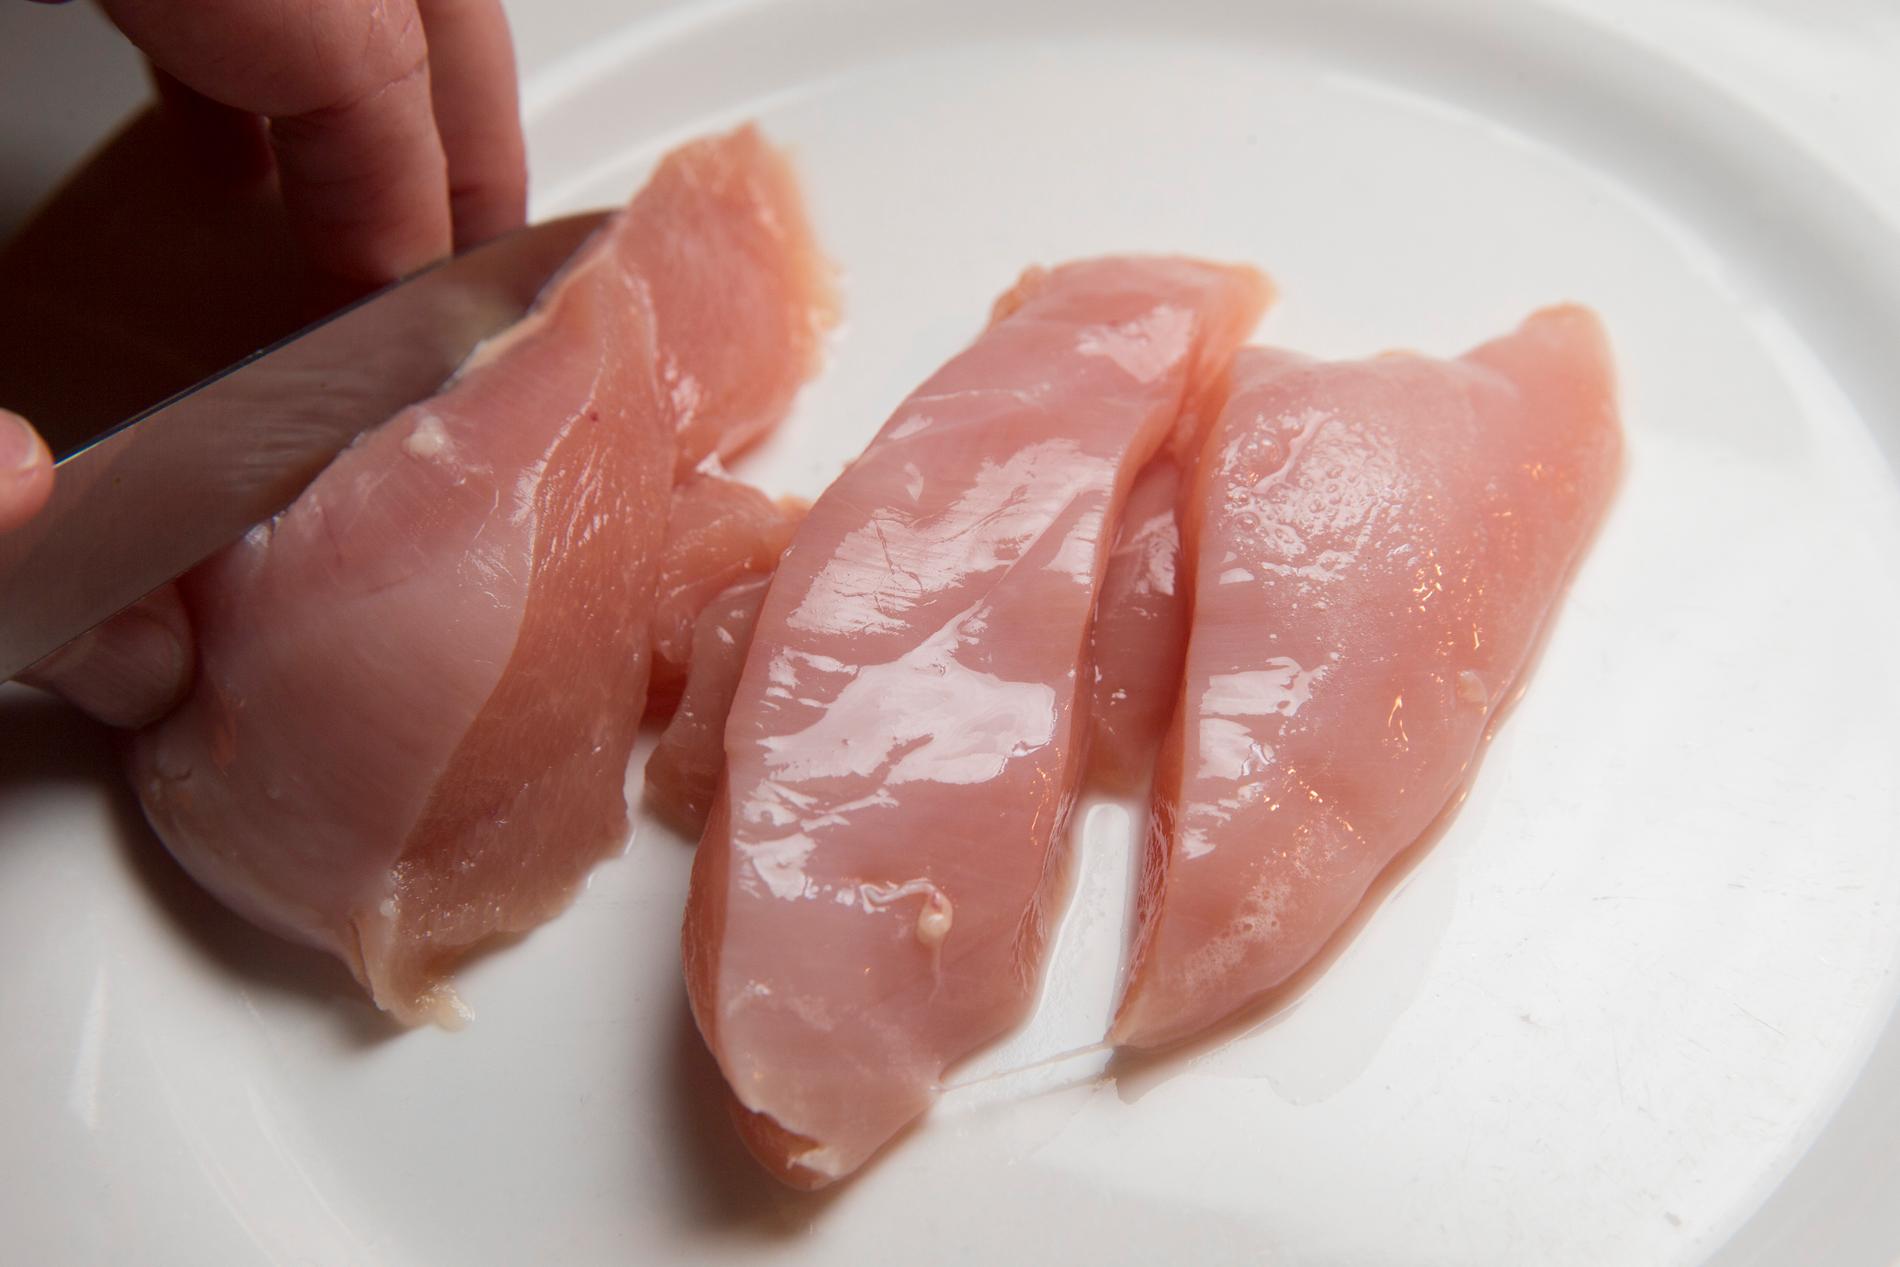 Kycklingkött utan salmonellagaranti får inte säljas i Sverige. Arkivbild.